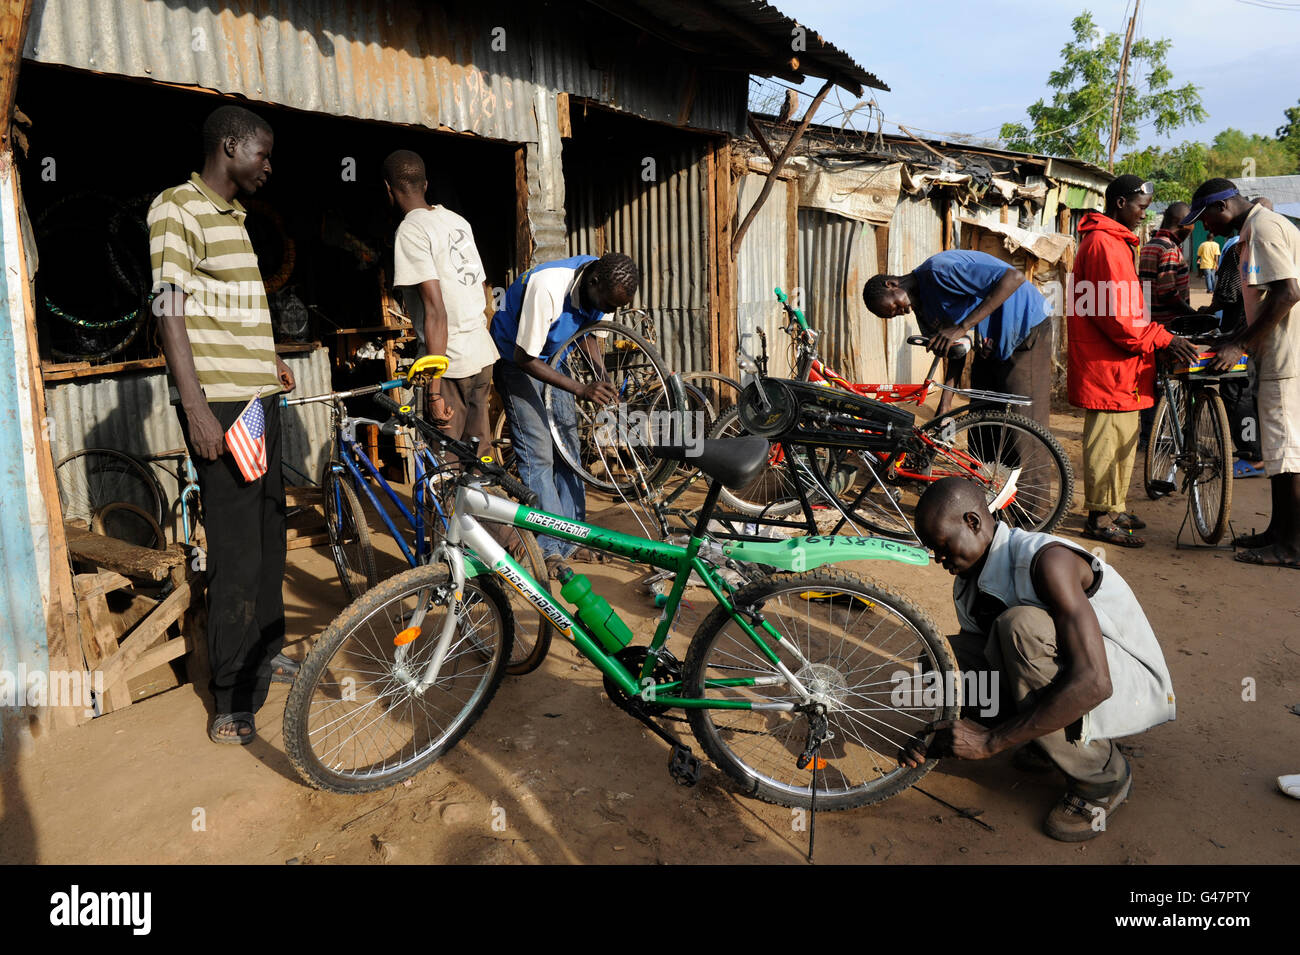 La région de Turkana au Kenya, le HCR, le camp de réfugiés de Kakuma où 80,000 permanent des réfugiés de Somalie, l'Éthiopie, le Soudan du Sud sont vivant, petite entreprise Atelier de vélo Banque D'Images